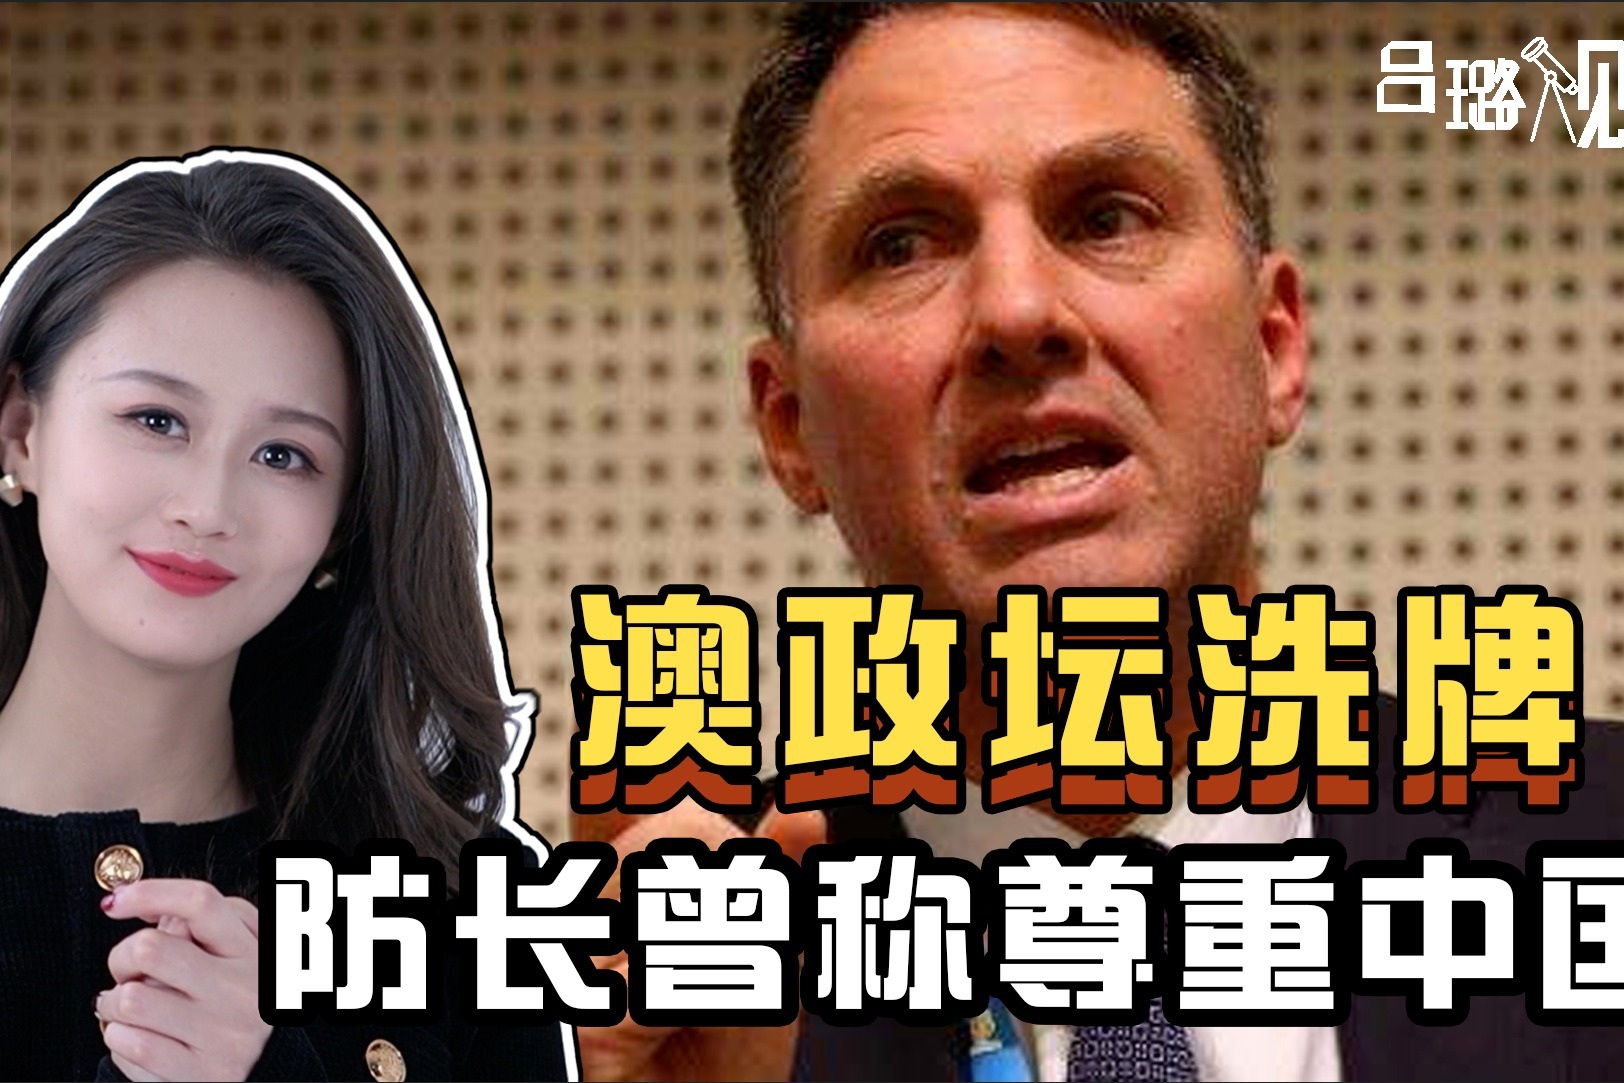 什么意思？澳洲政坛洗牌，“尊重中国”的资深政客，意外当上防长